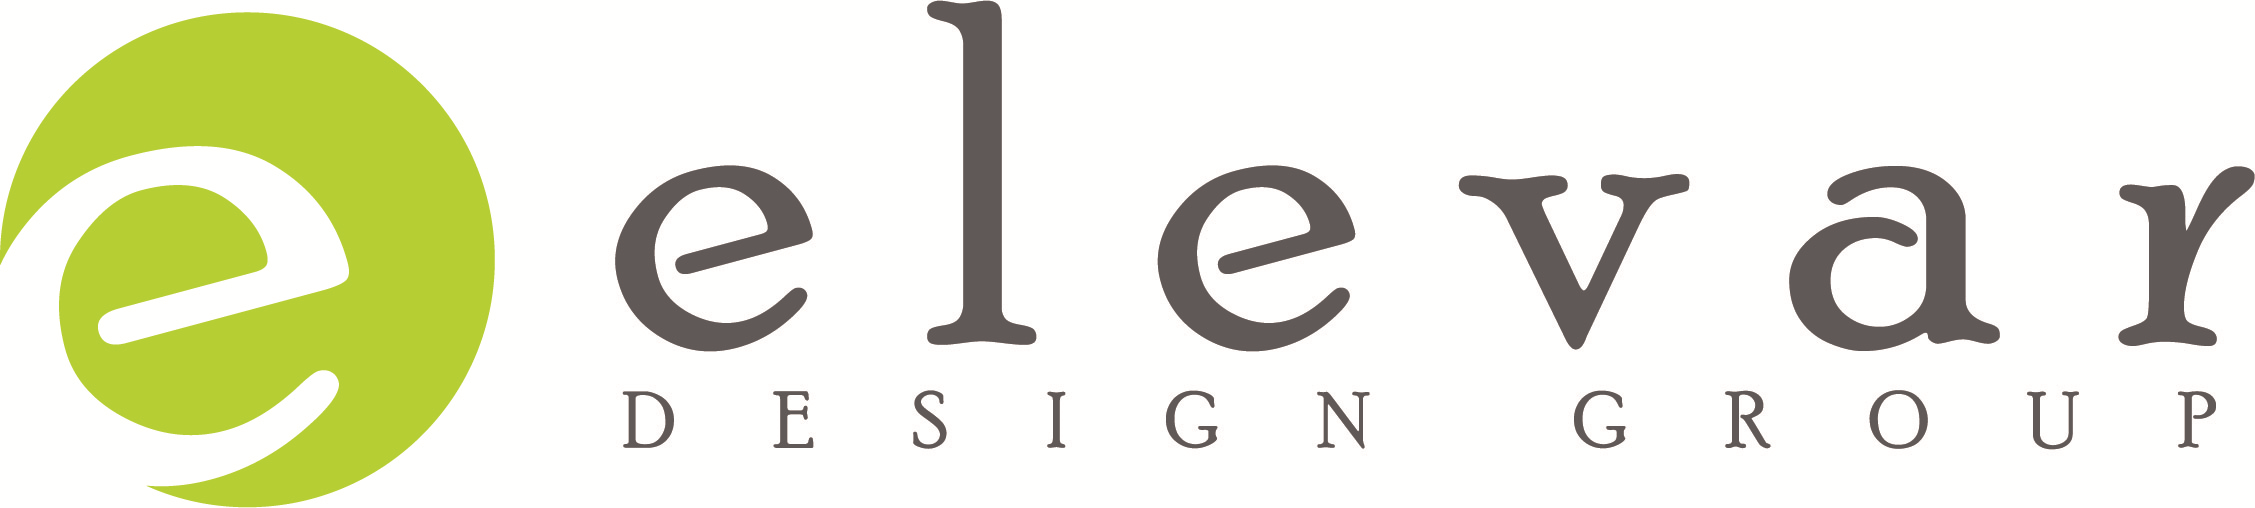 Elevar Design Group logo